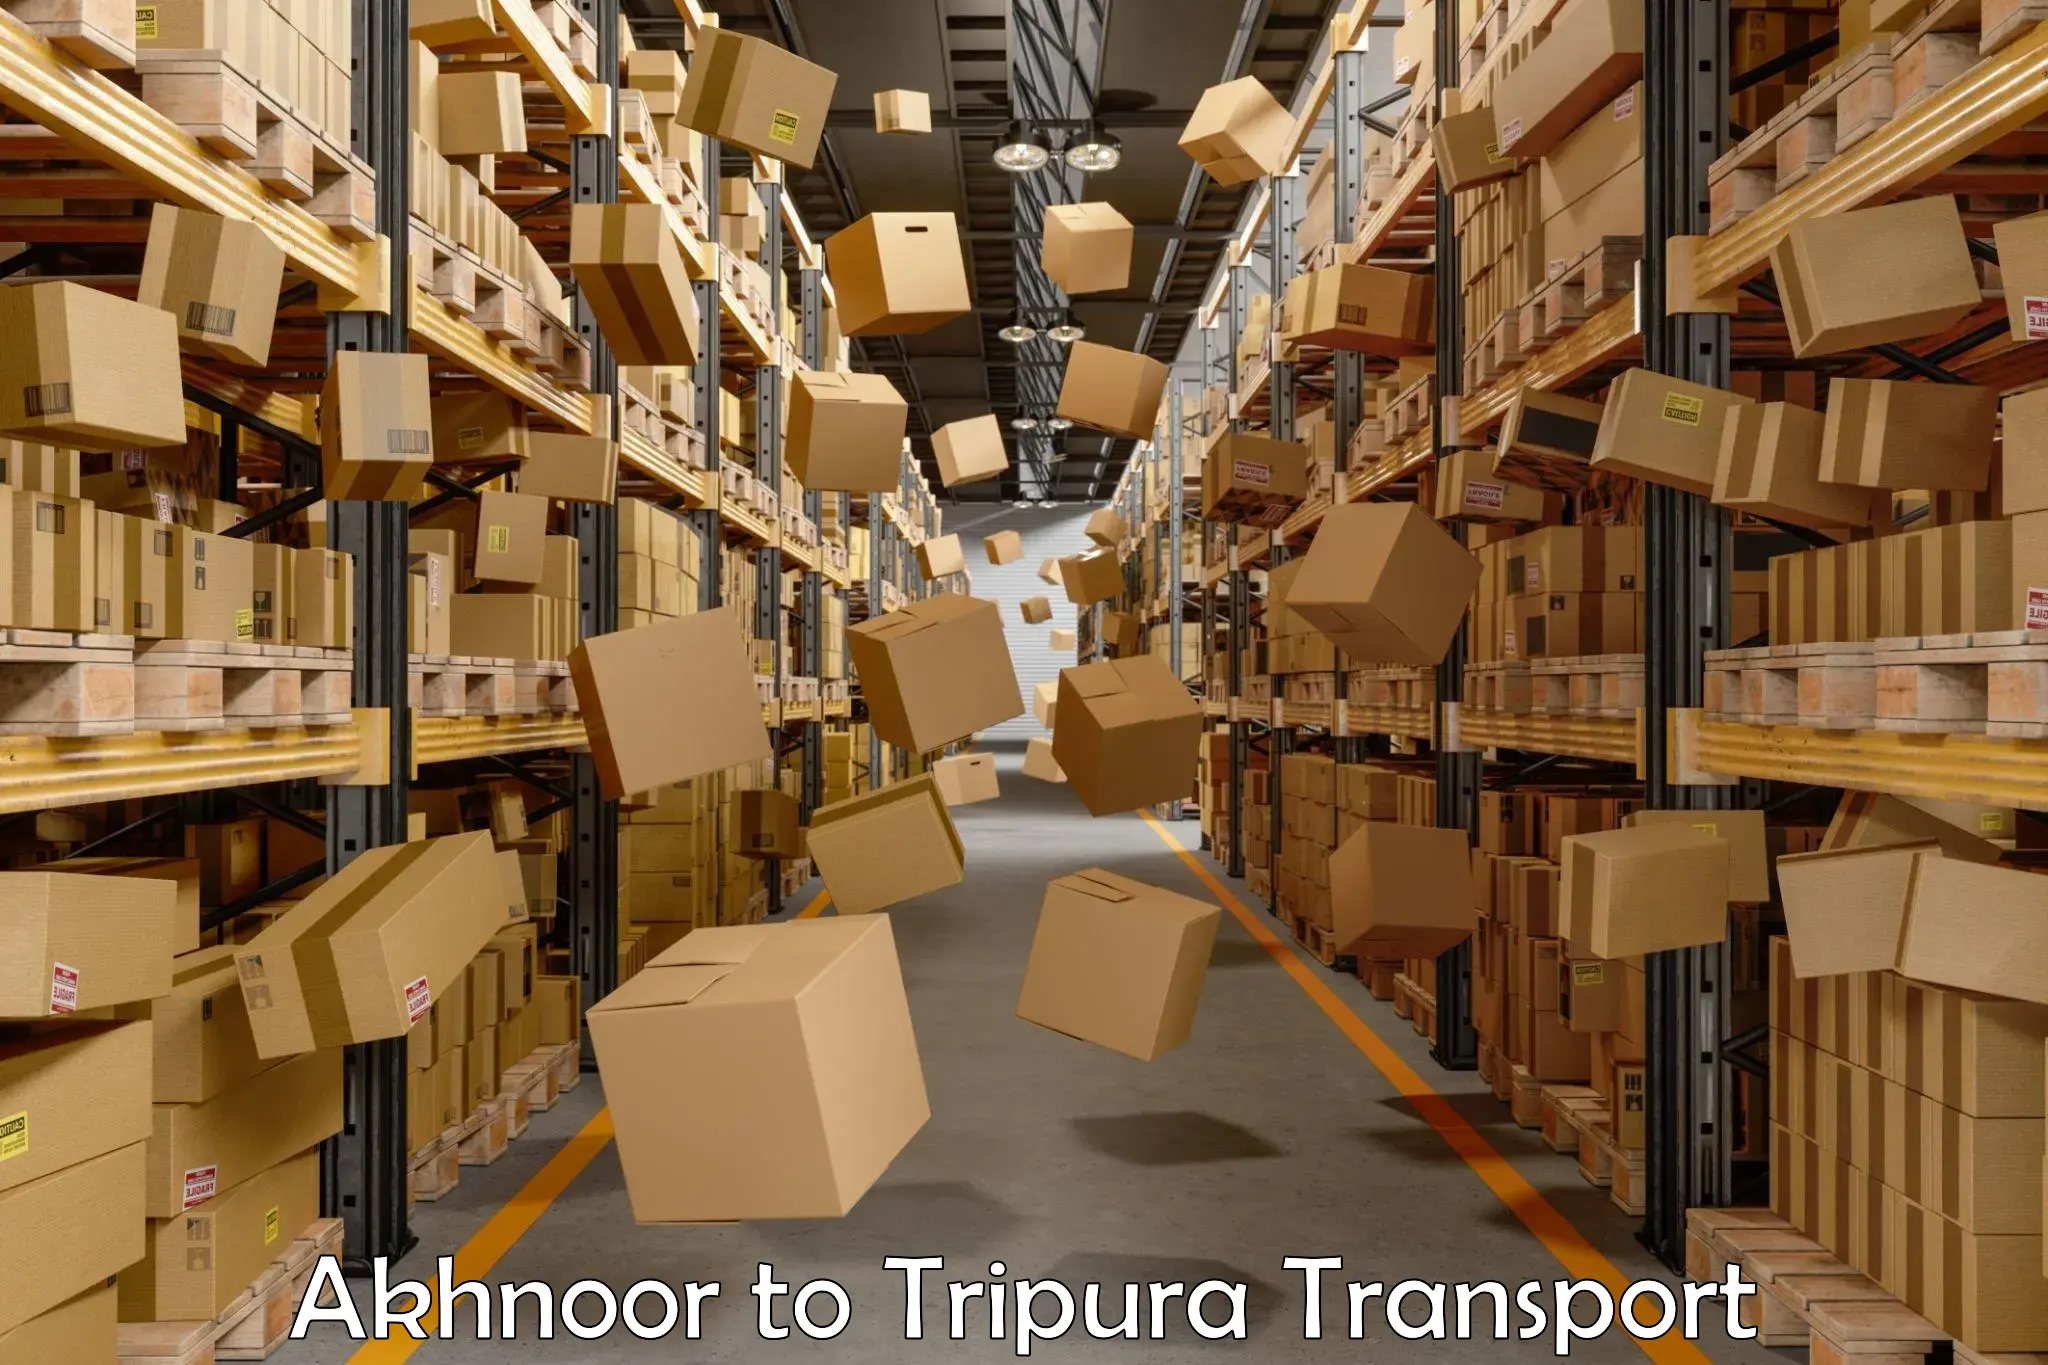 Cargo transport services in Akhnoor to Manu Bazar